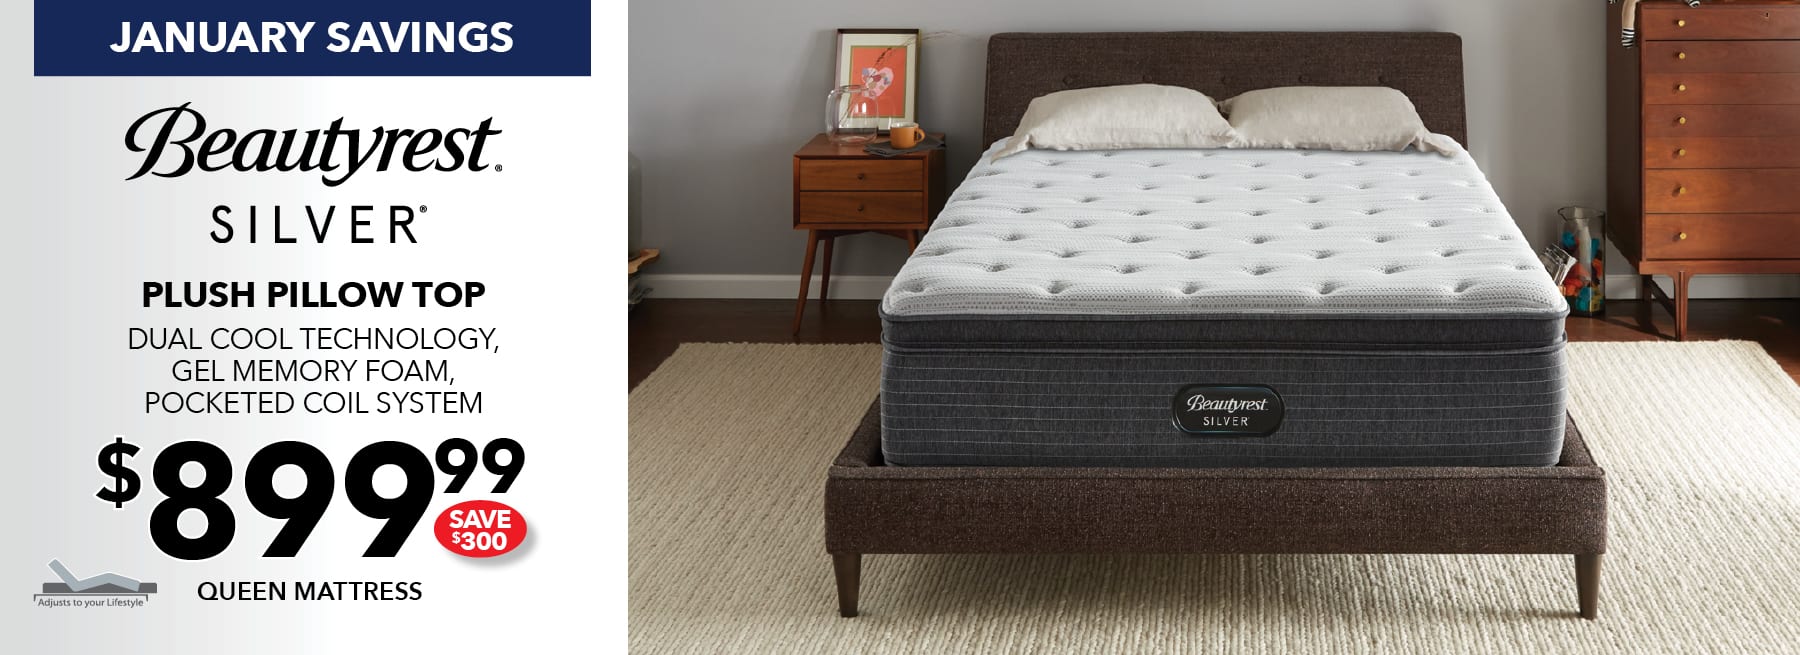 best mattress prices in las vegas